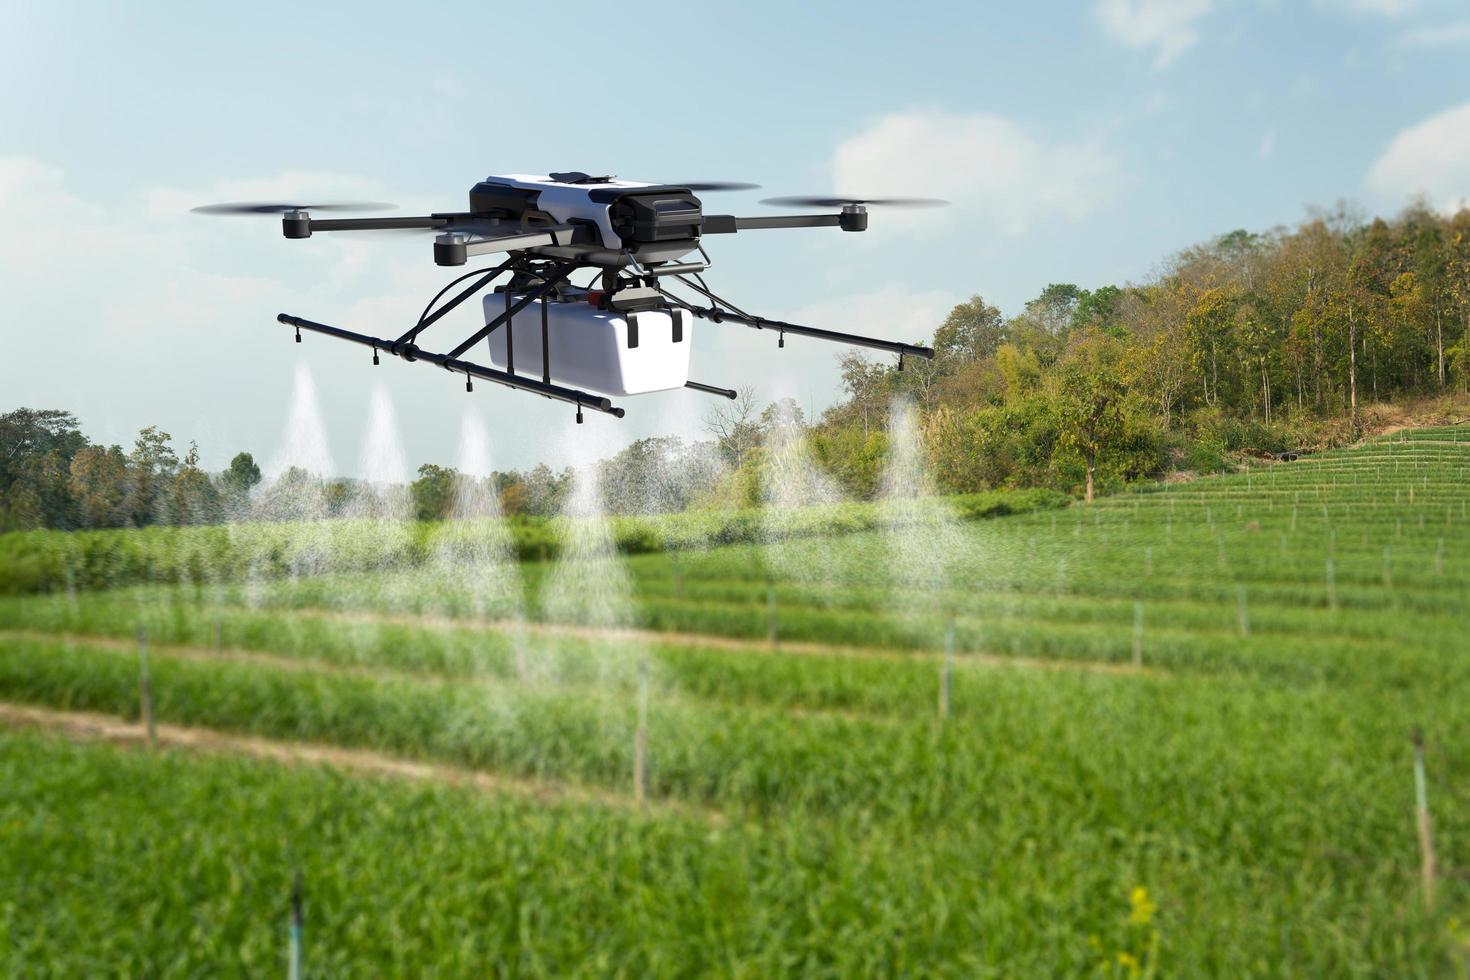 drones rociando pesticidas en campos de trigo. foto